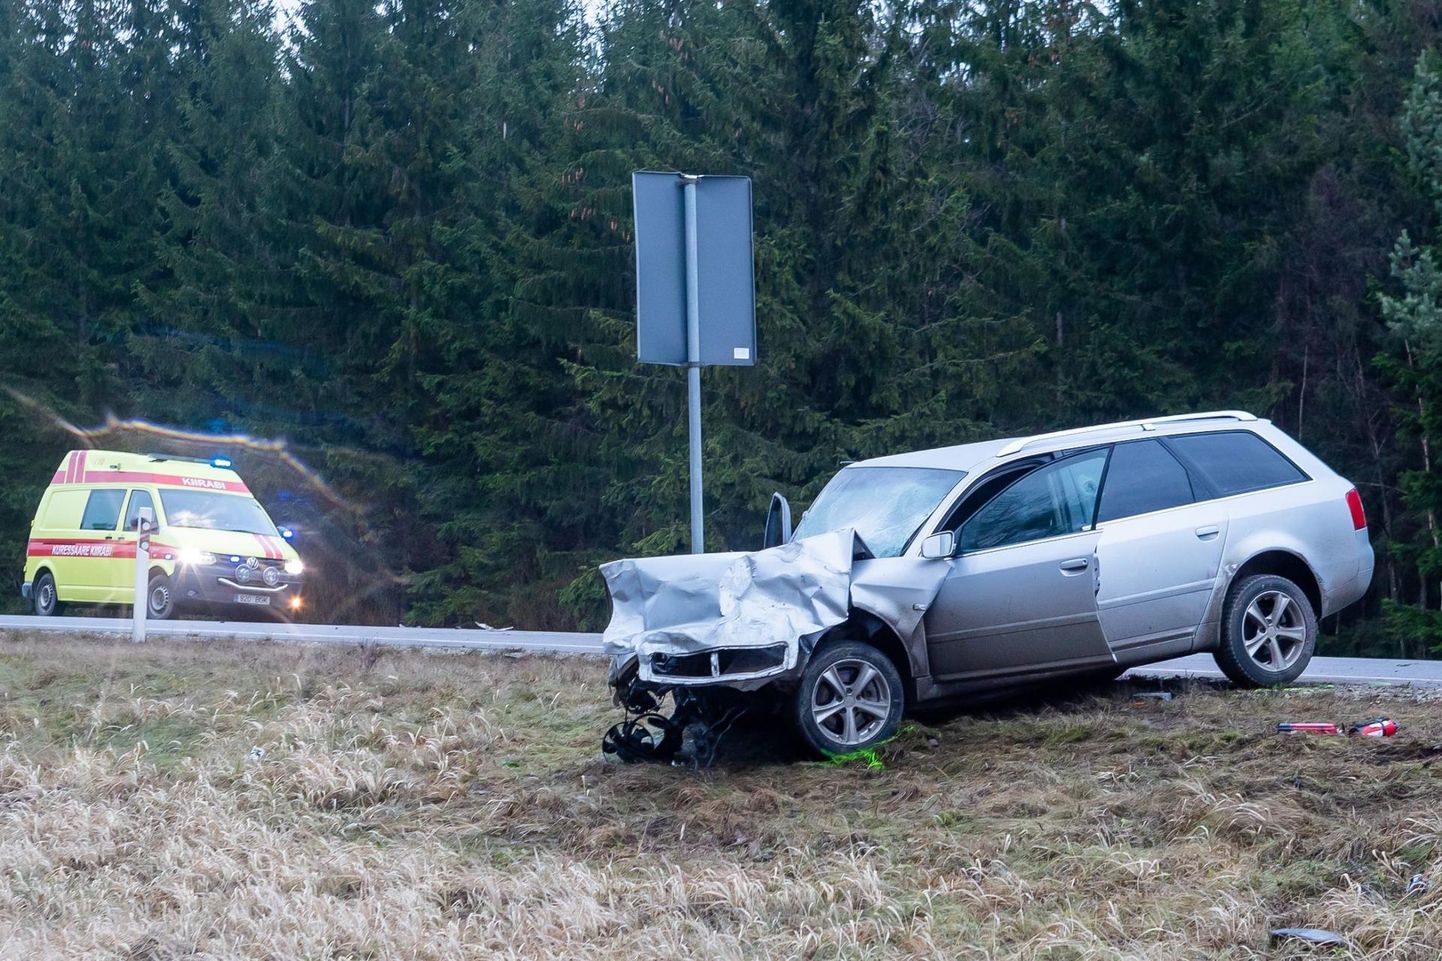 Liiklusõnnetus Saaremaal Risti-Virtsu-Kuivastu maantee 128. kilomeetril. Roolijoodiku põhjustatud avariis sai surma kolm inimest. 